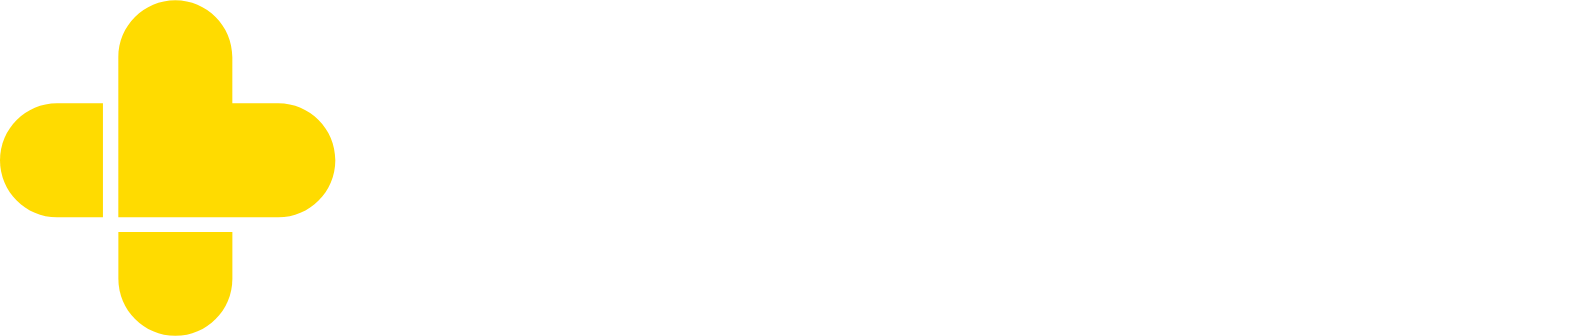 GoodRx logo grand pour les fonds sombres (PNG transparent)